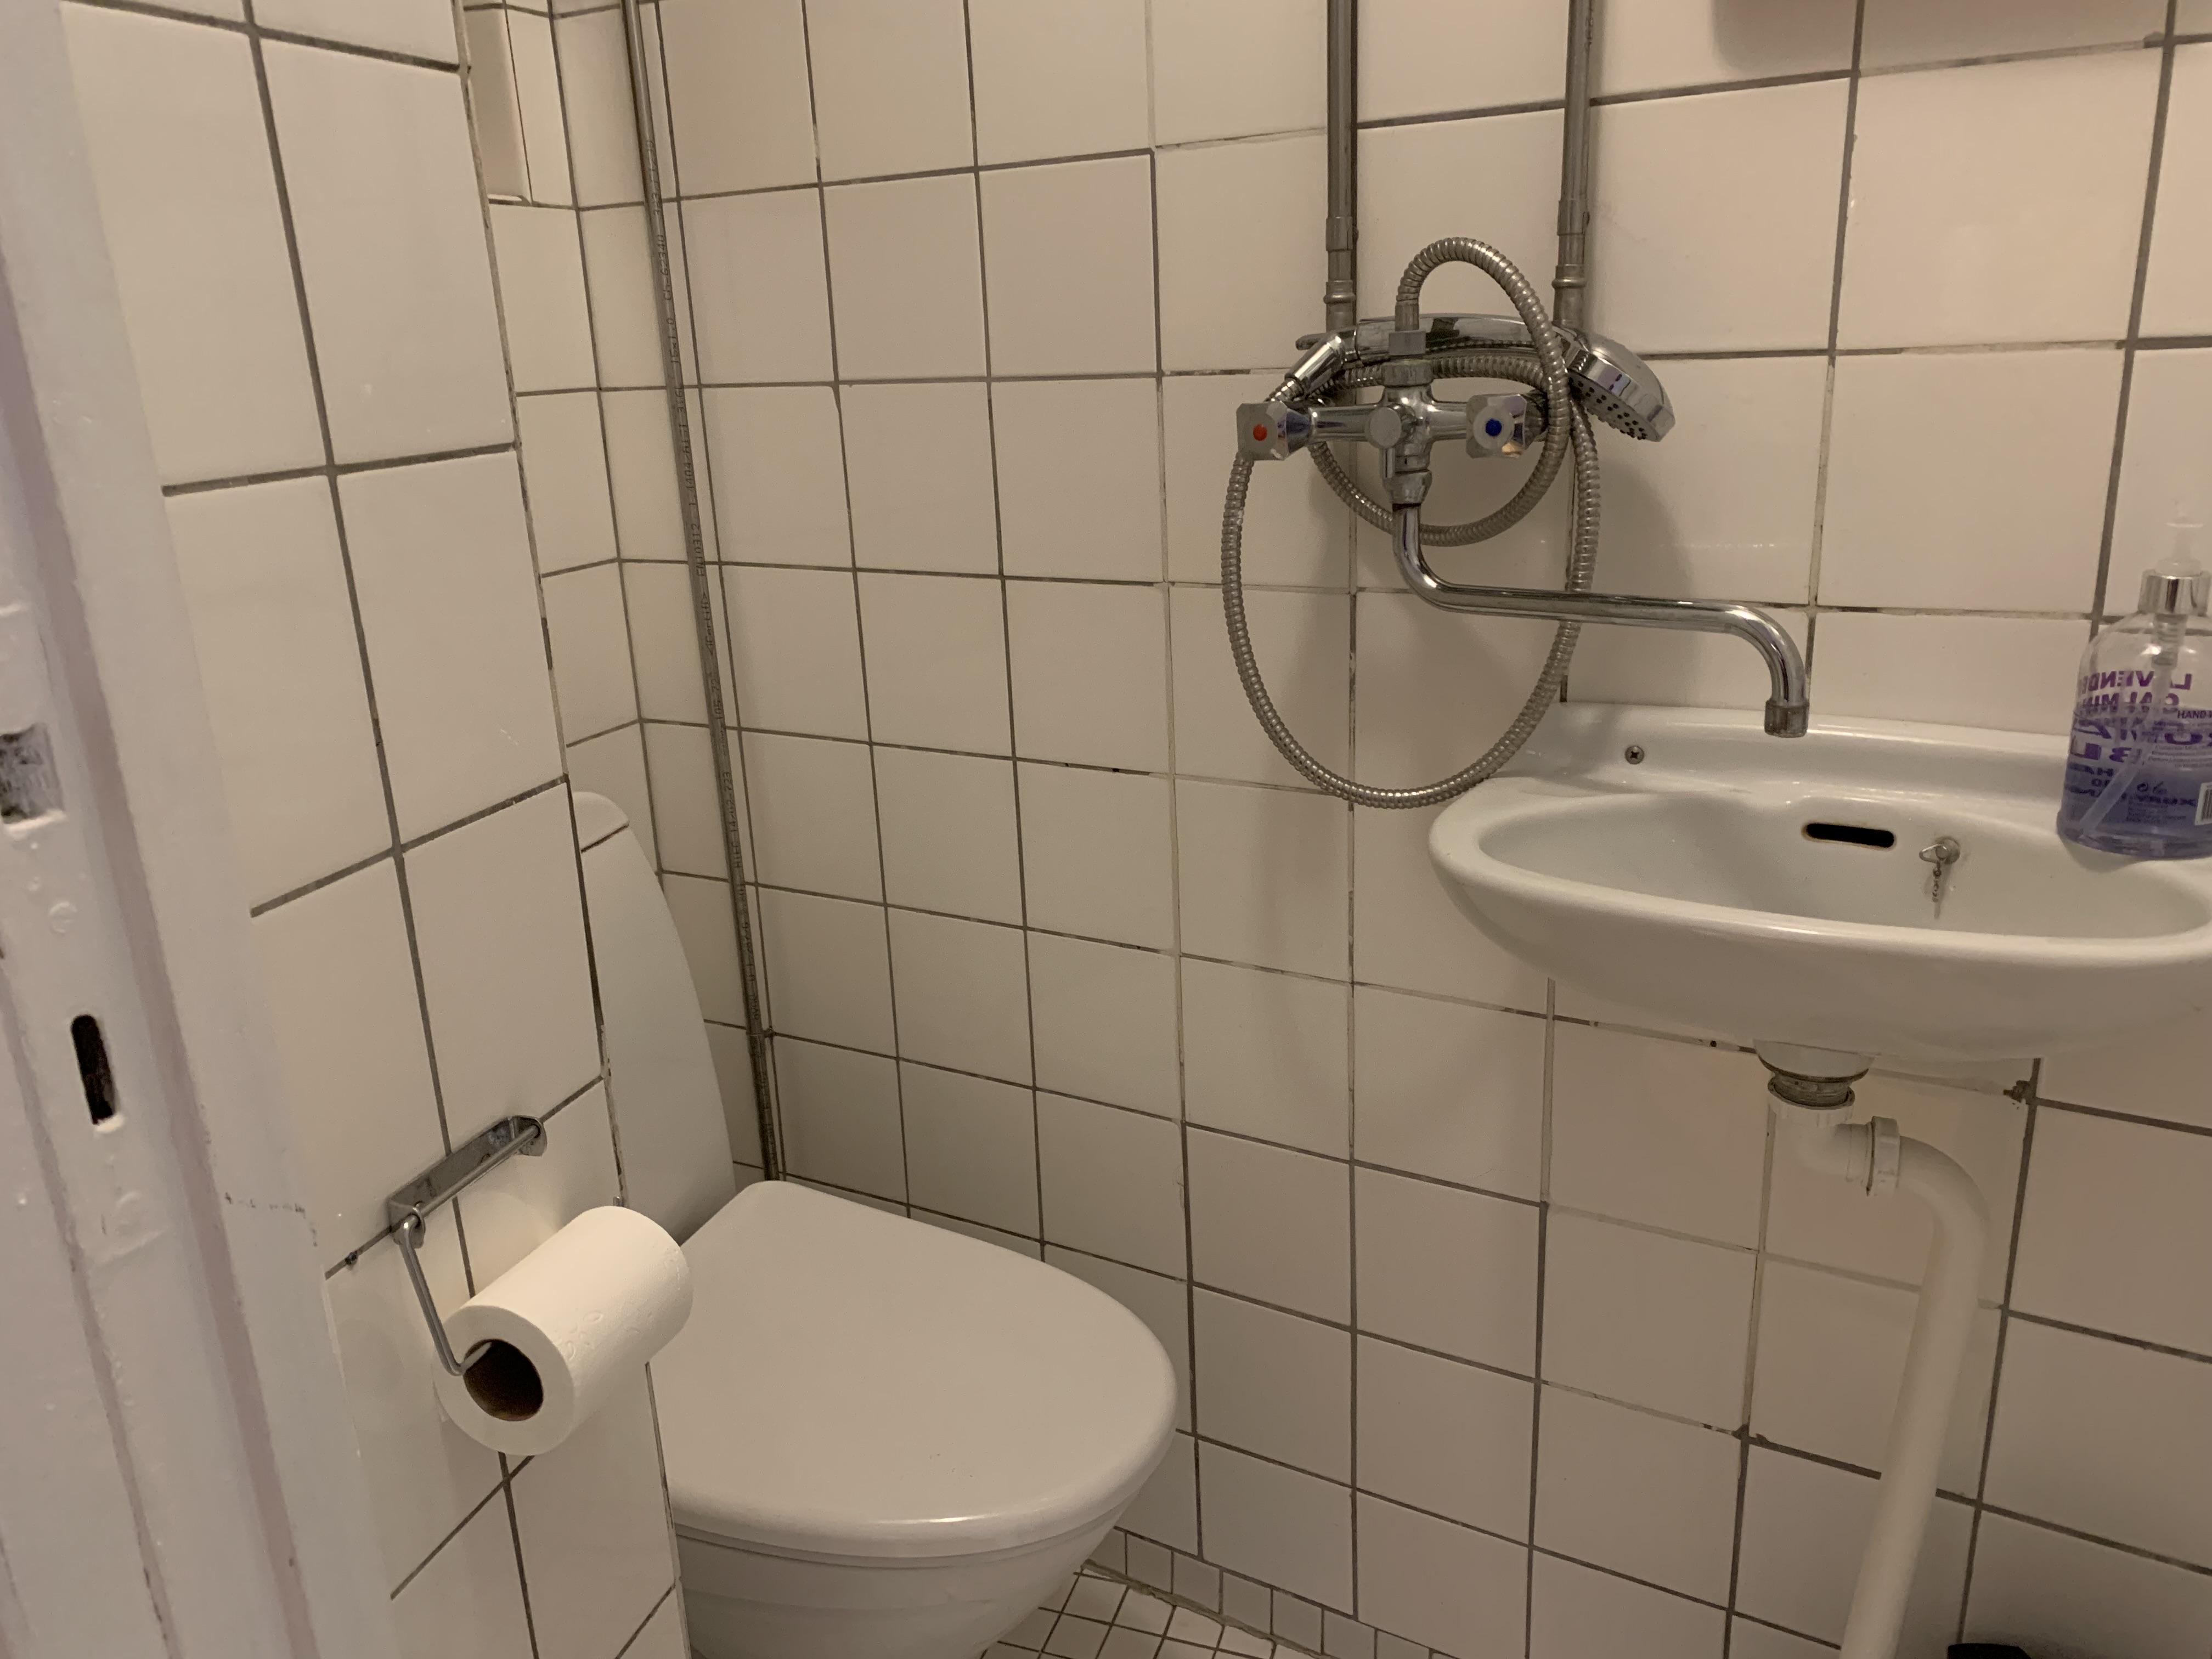 Surprisingly Denmark: Why many bathrooms are so tiny